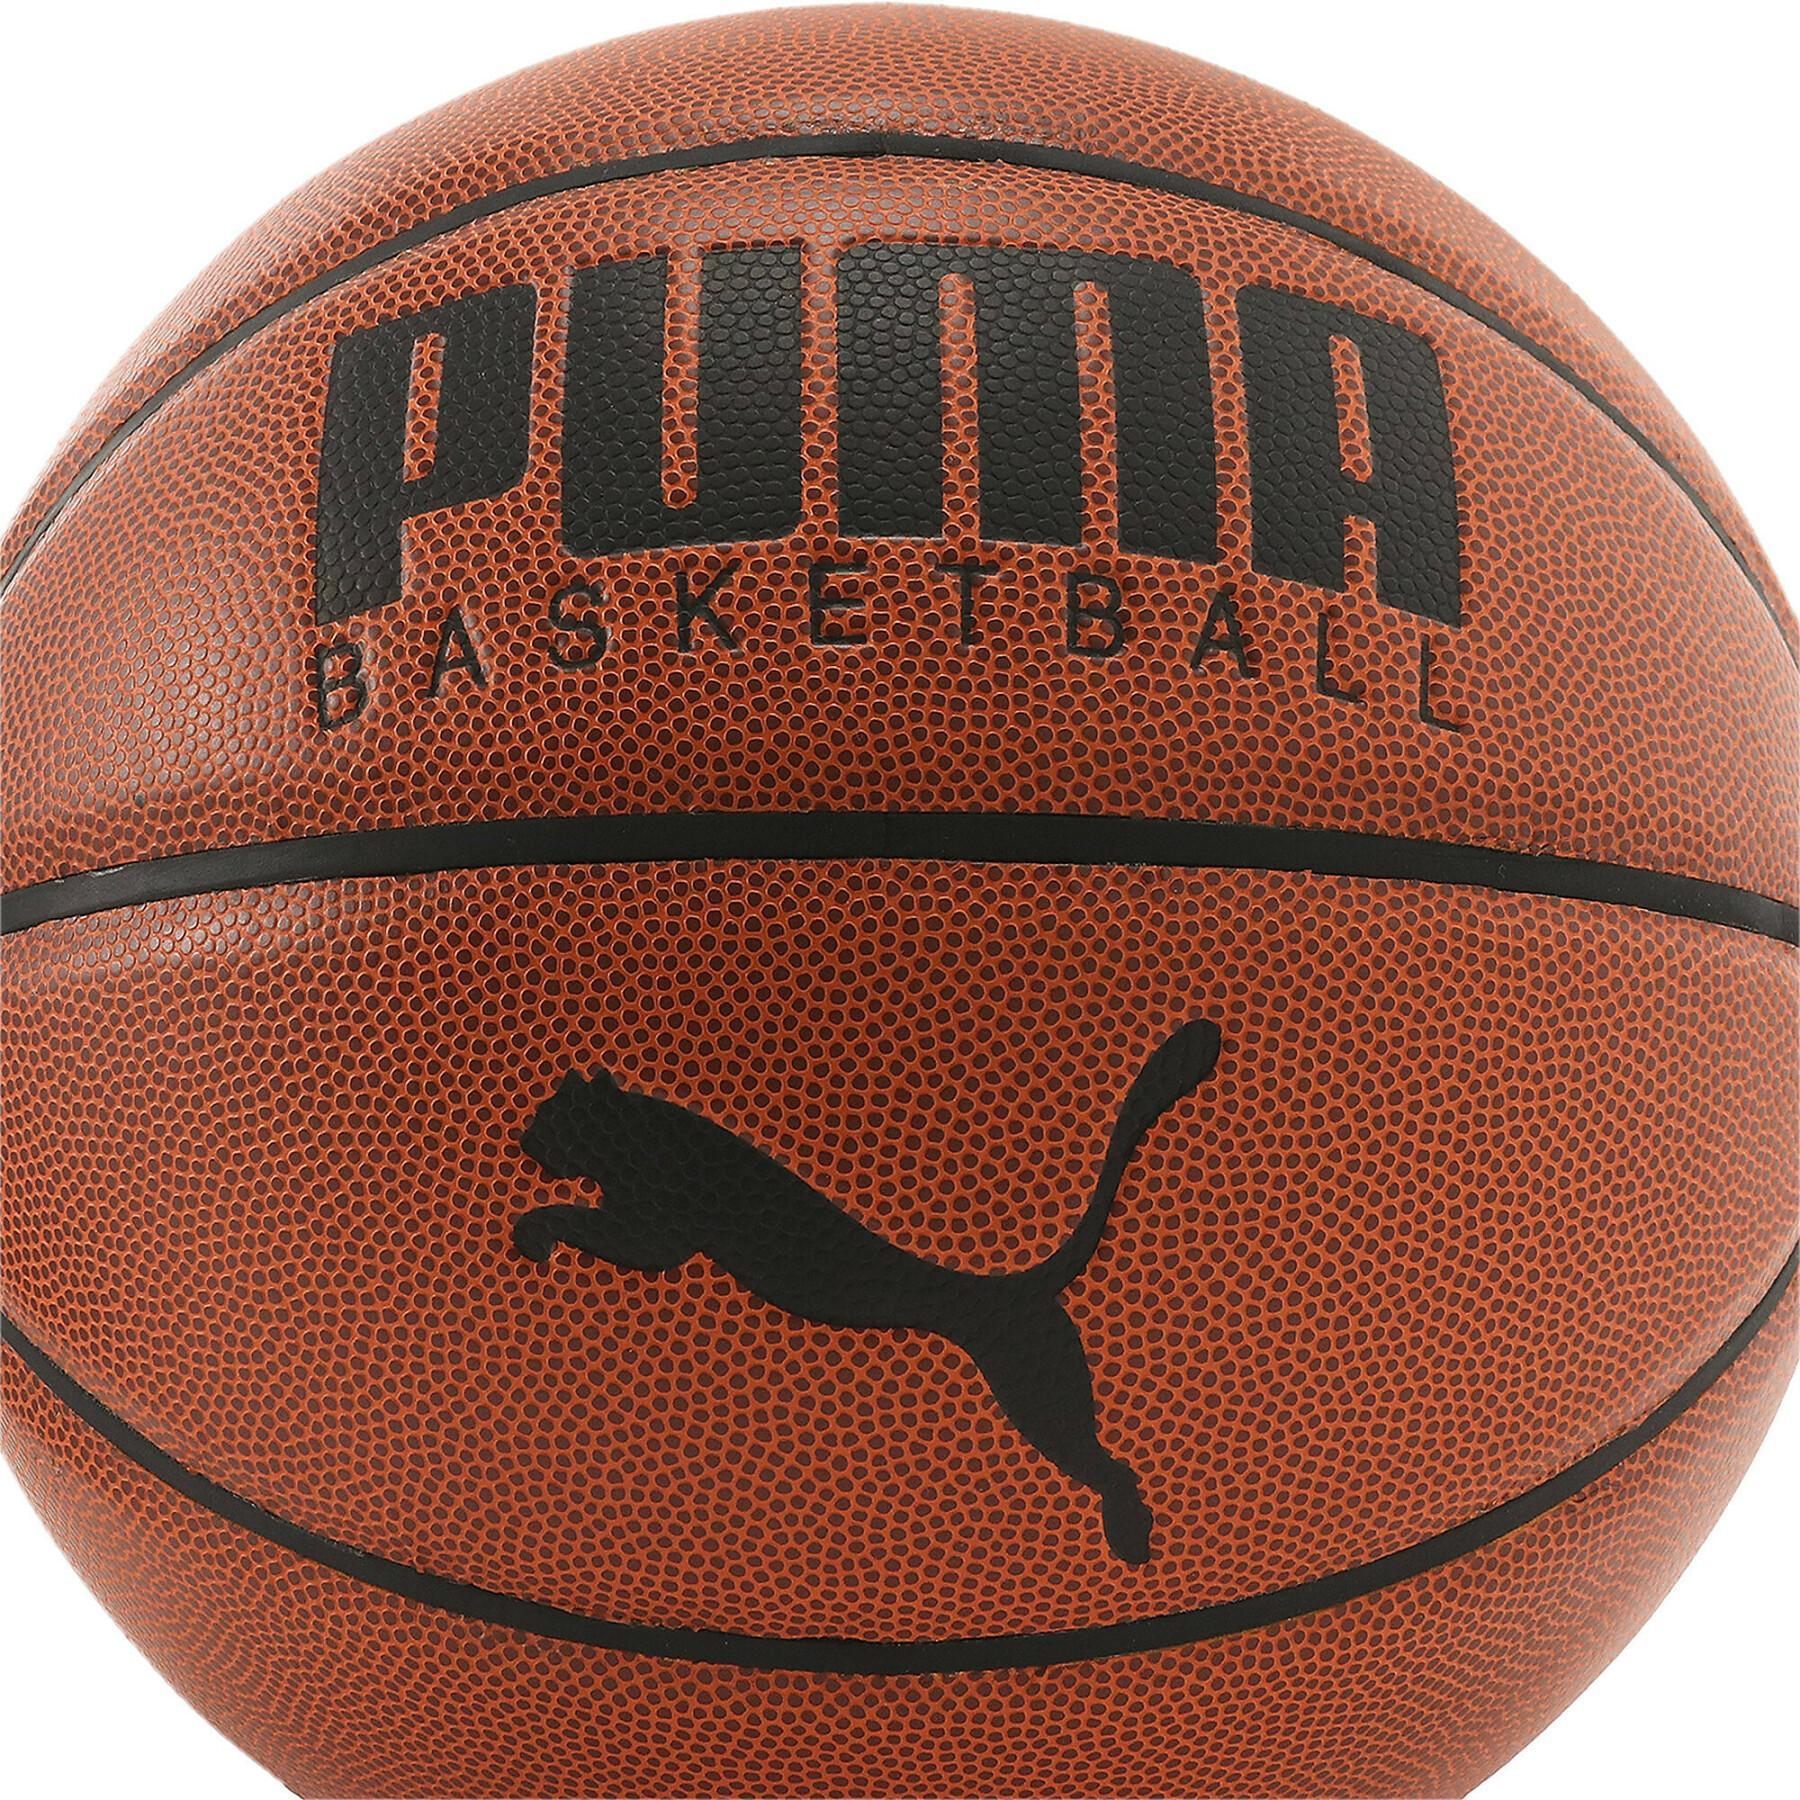 Basketball Puma Basketball Top